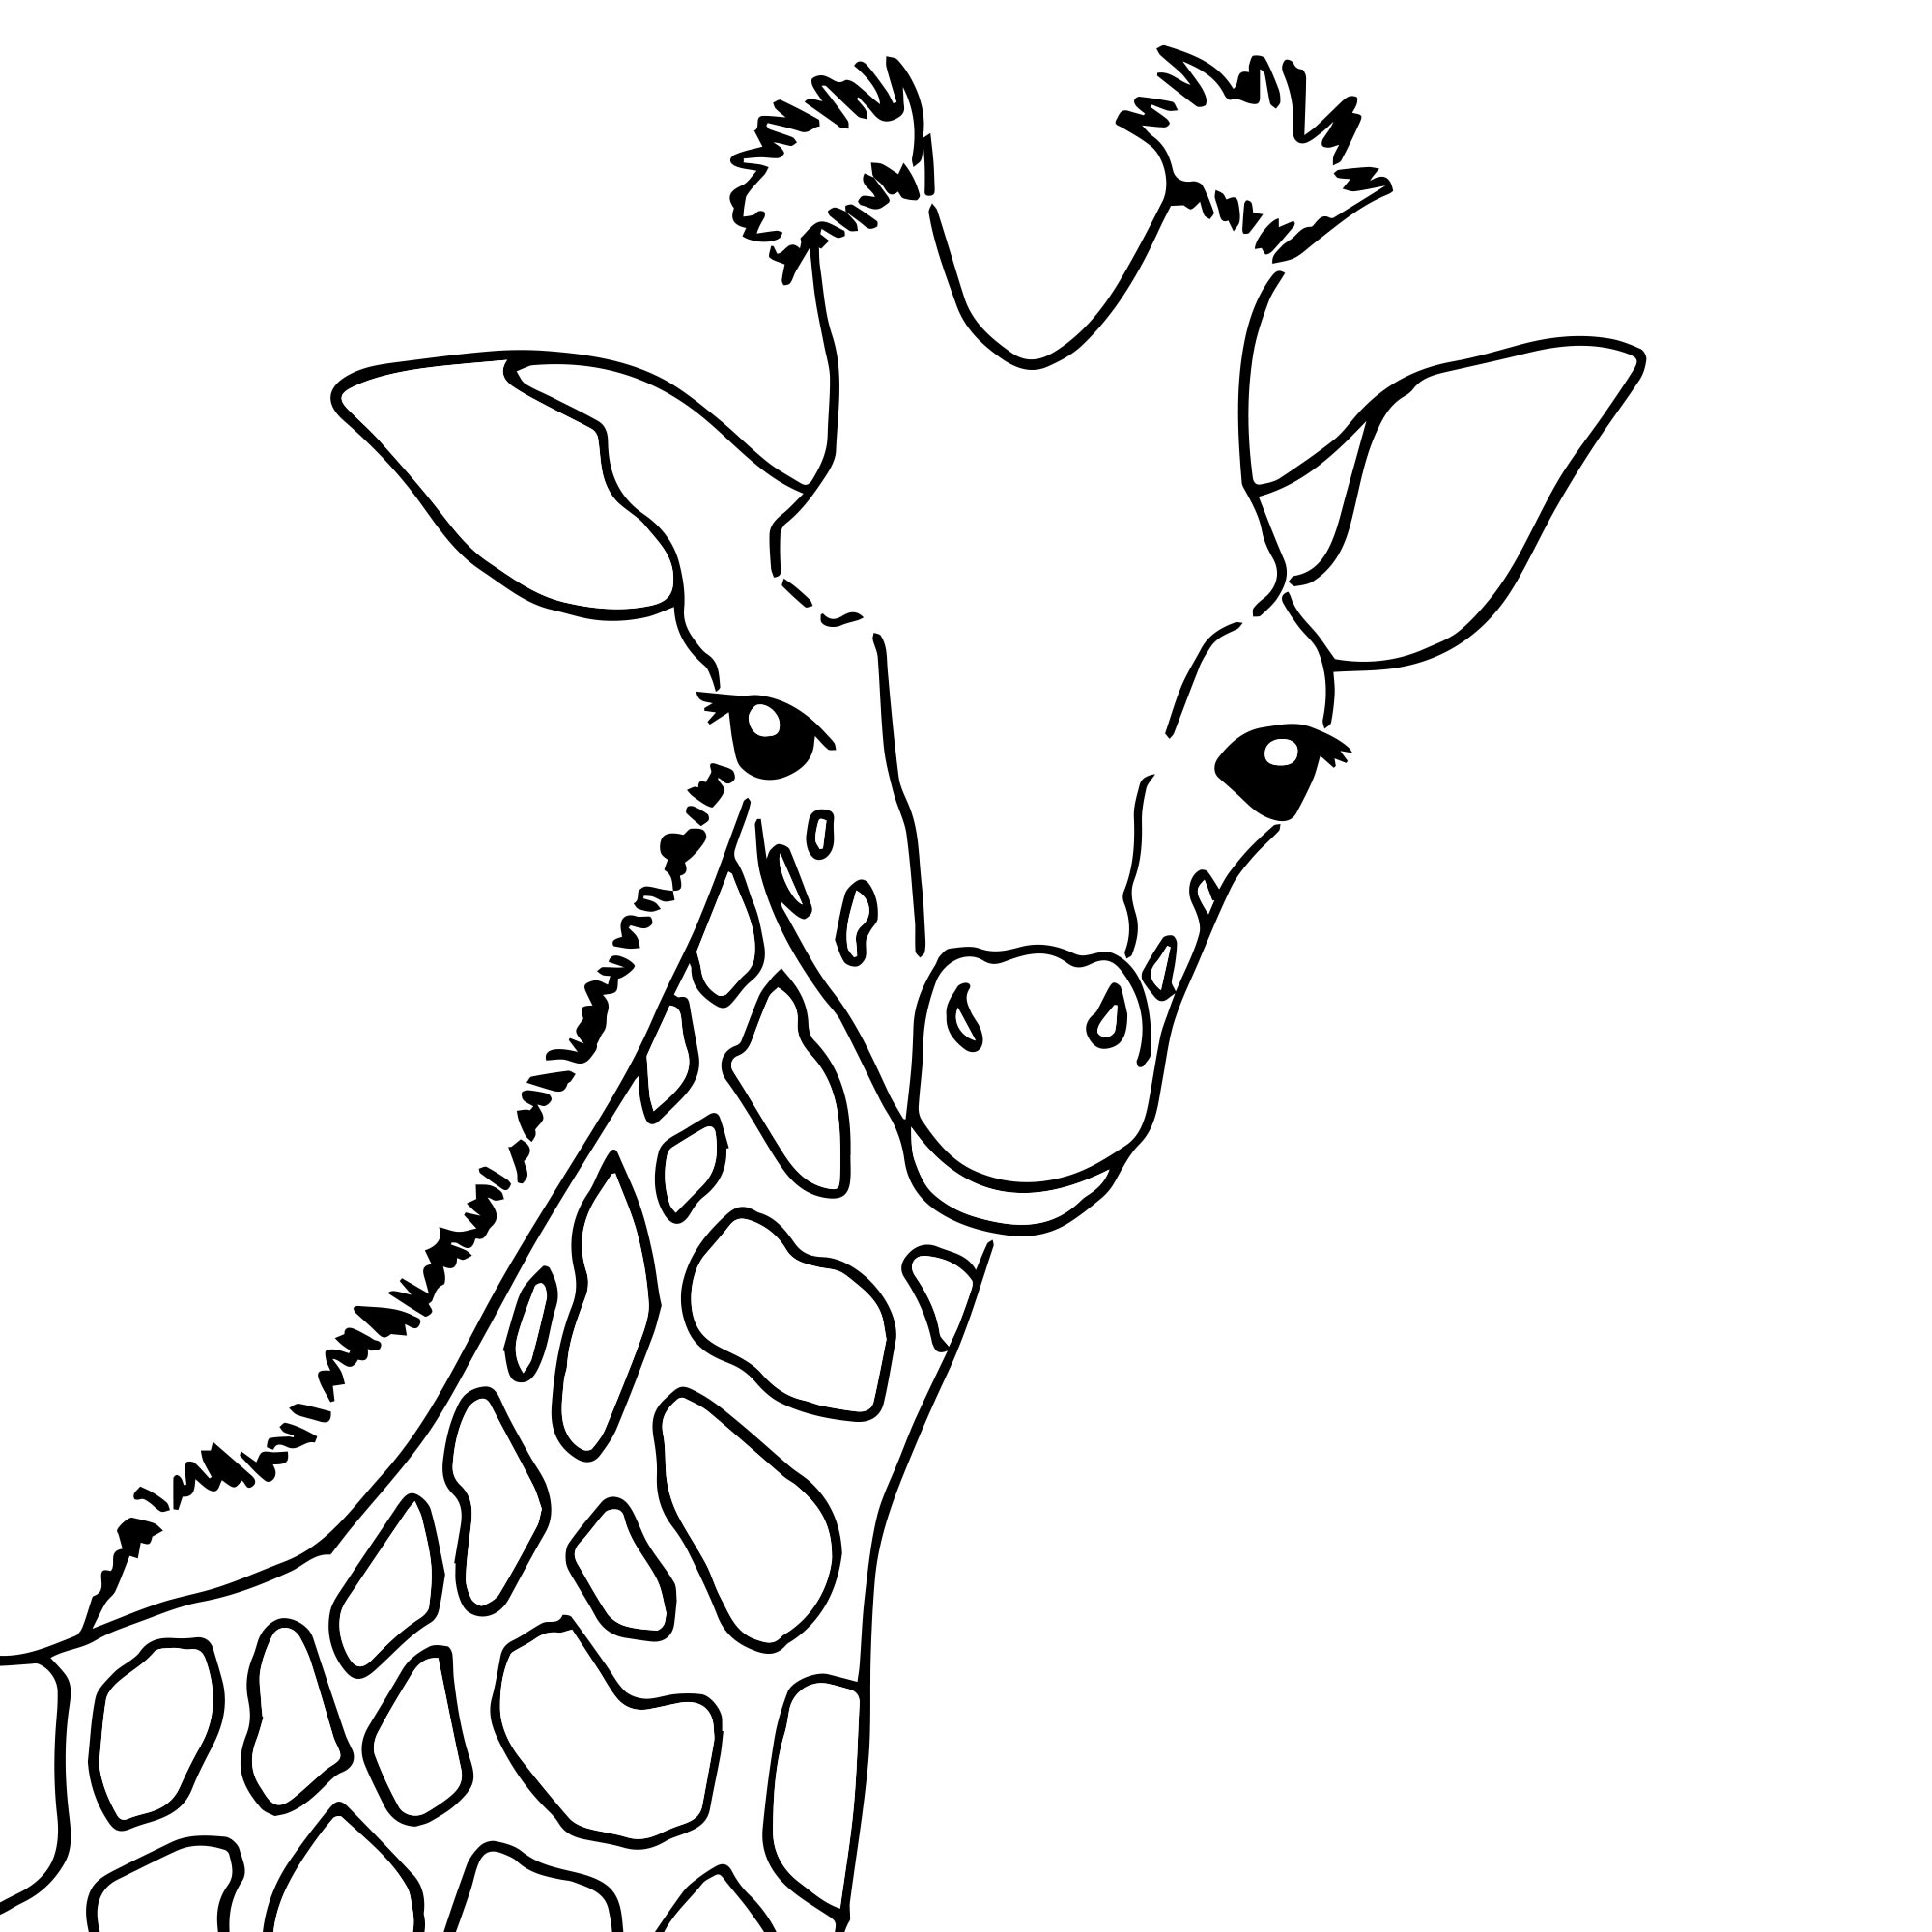 Жираф - скачать и распечатать раскраску. Жираф, антистресс